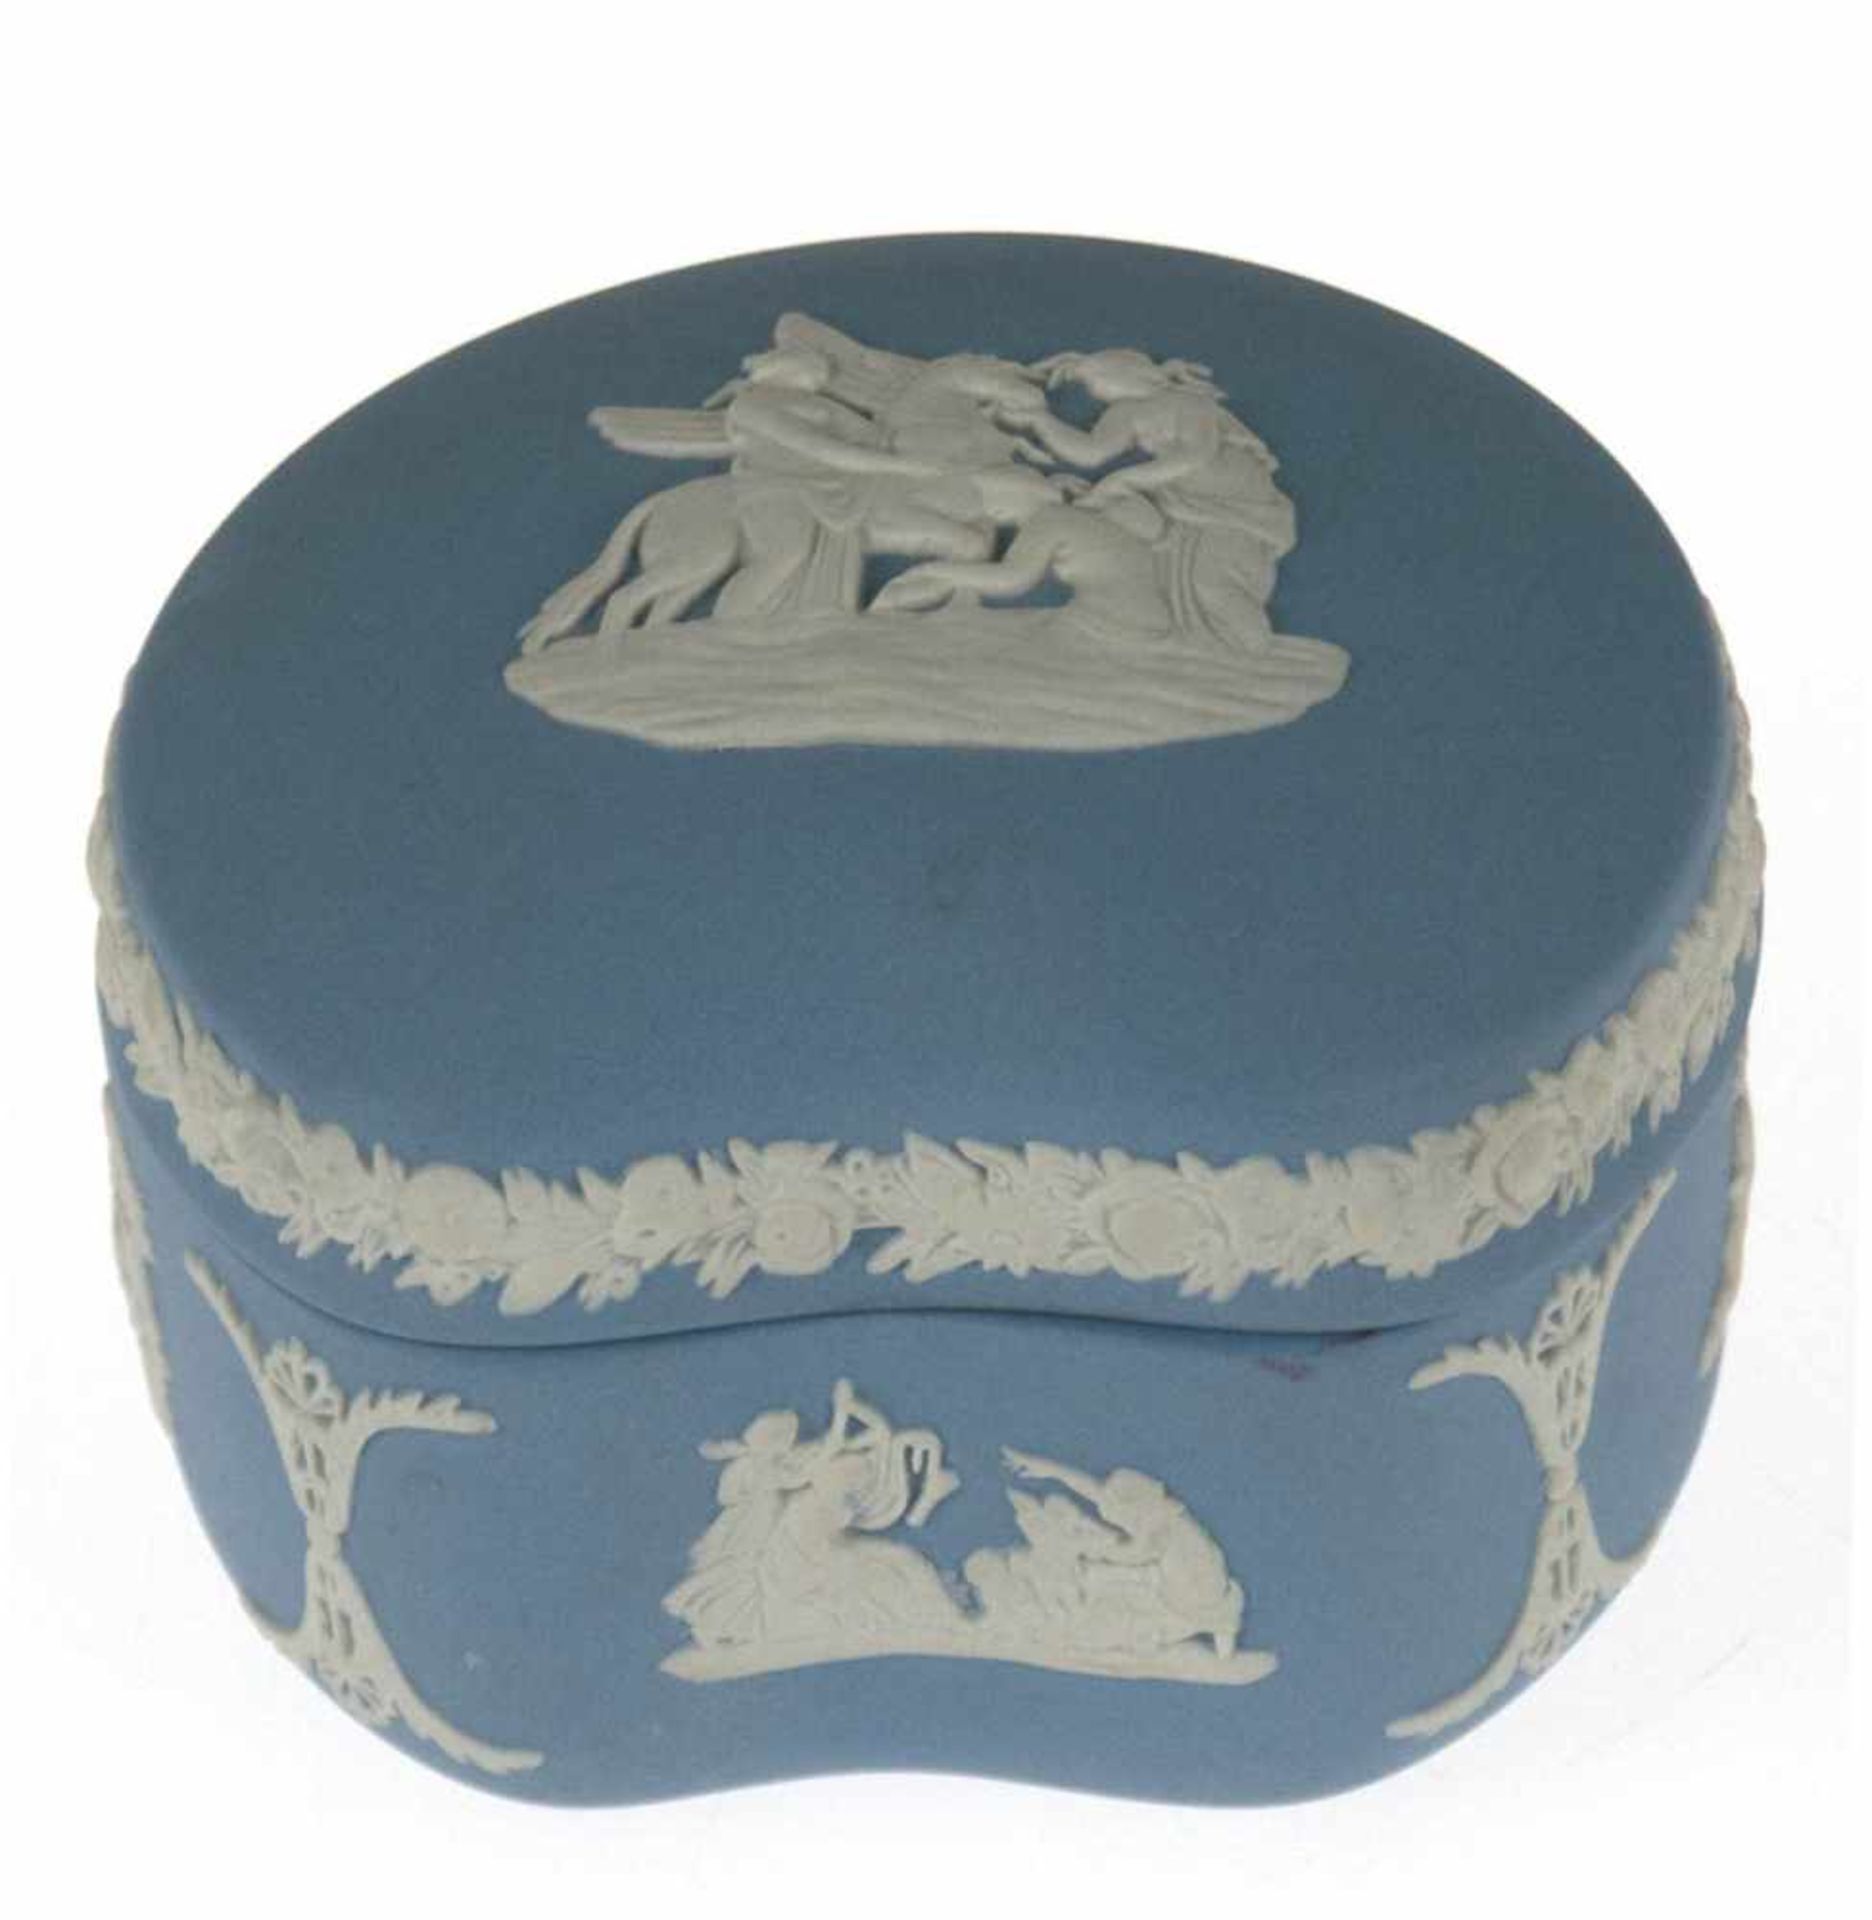 Deckeldose, Jasperware, Wedgwood, hellblau mit reliefierten figürlichen und floralenAuflagen, rund